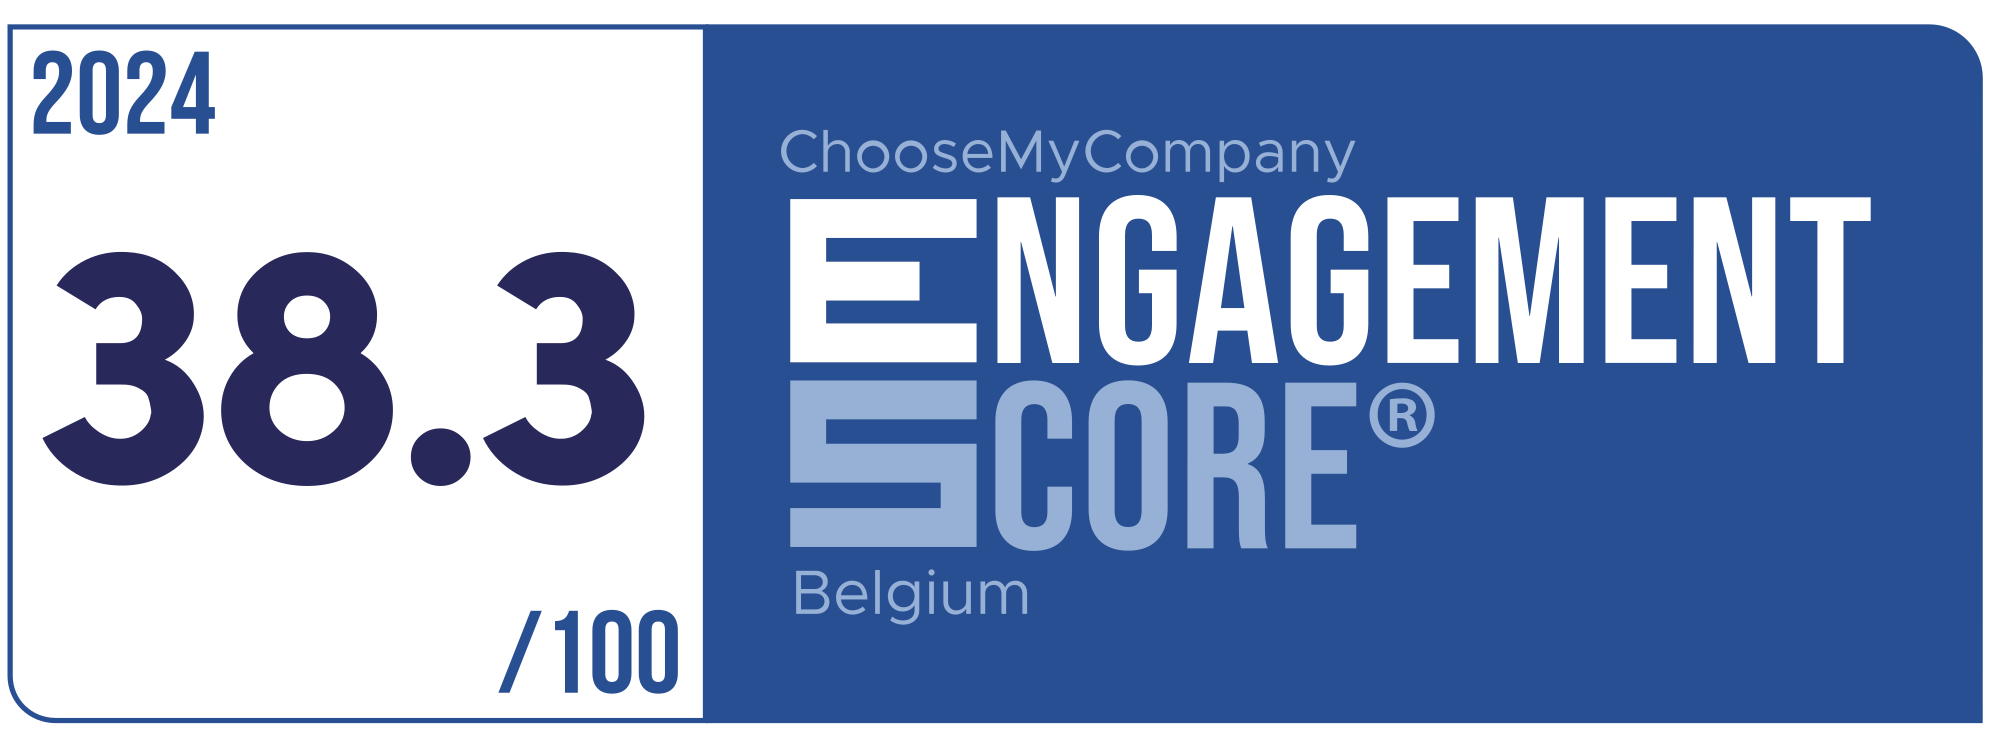 Label Engagement Score 2024 Belgium